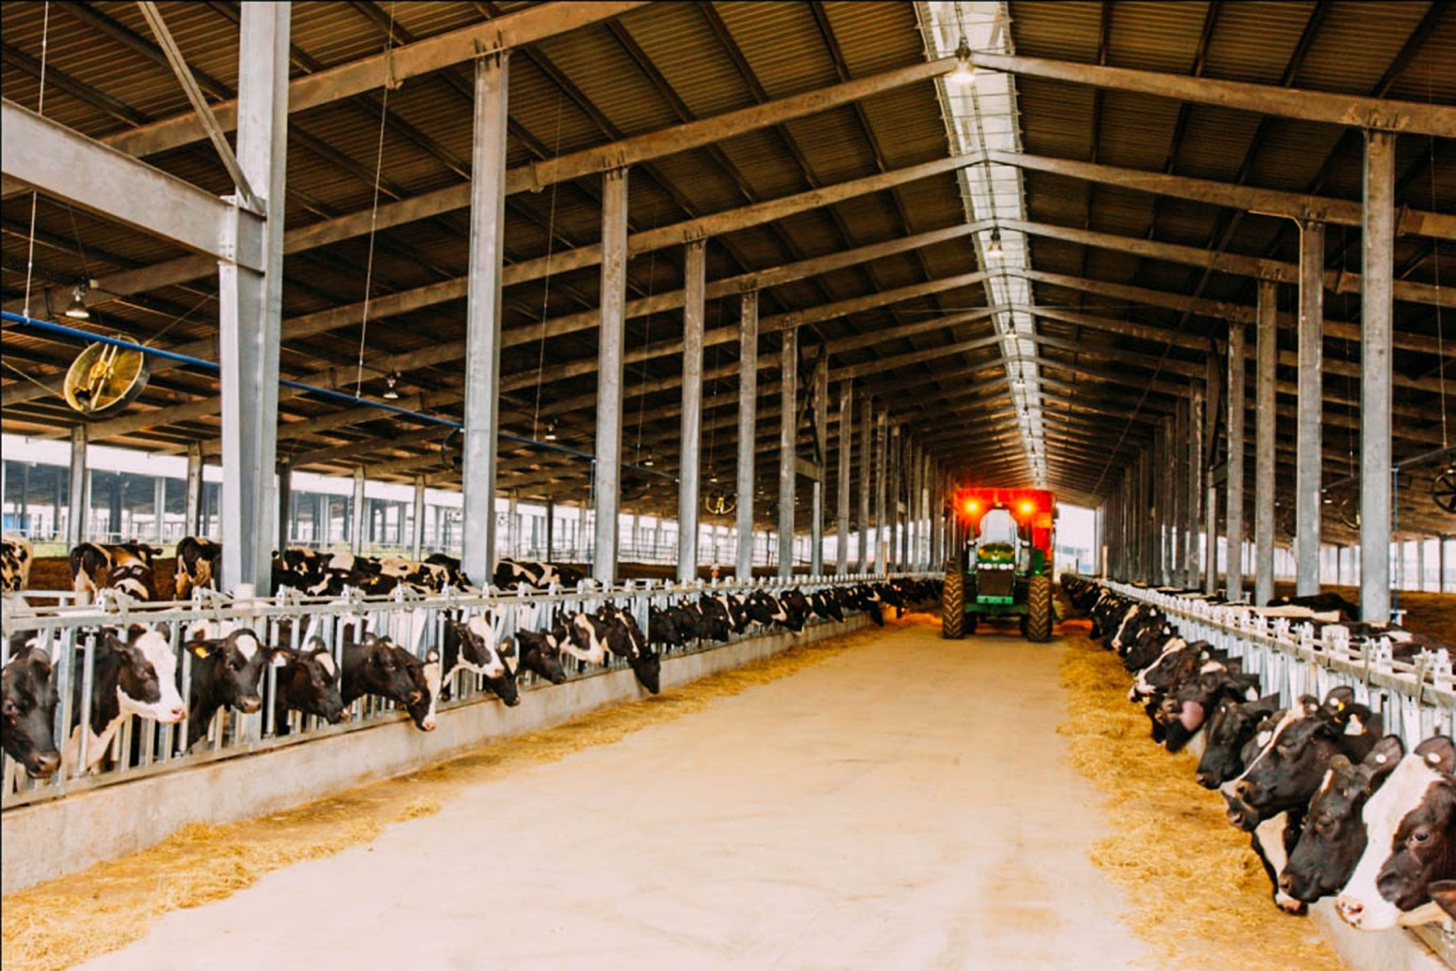 Đàn bò của TH được nuôi trong hệ thống chuồng trại hiện đại, thiết kế có mái che, gắn quạt mát giúp đàn bò được tự do vận động.